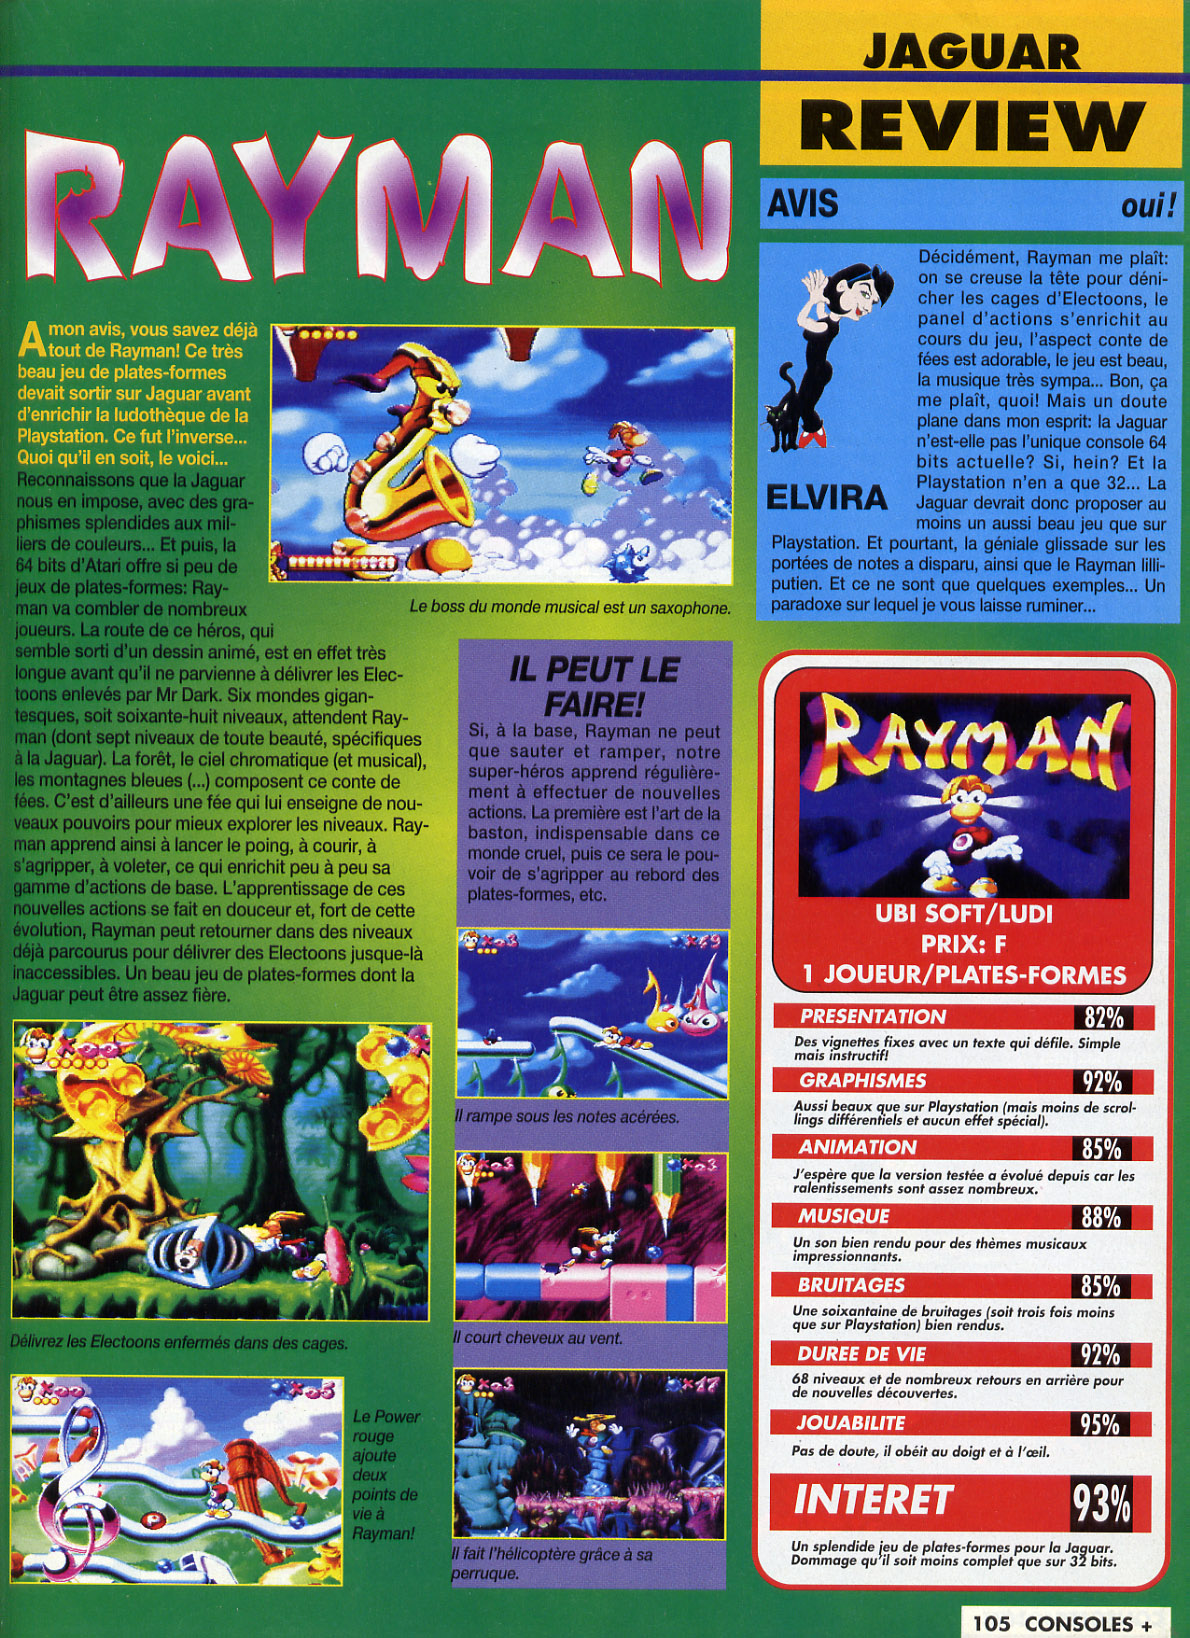 Rayman atari jaguar info,imagenes y videos Consoles%20+%20046%20-%20Page%20105%20(1995-09)